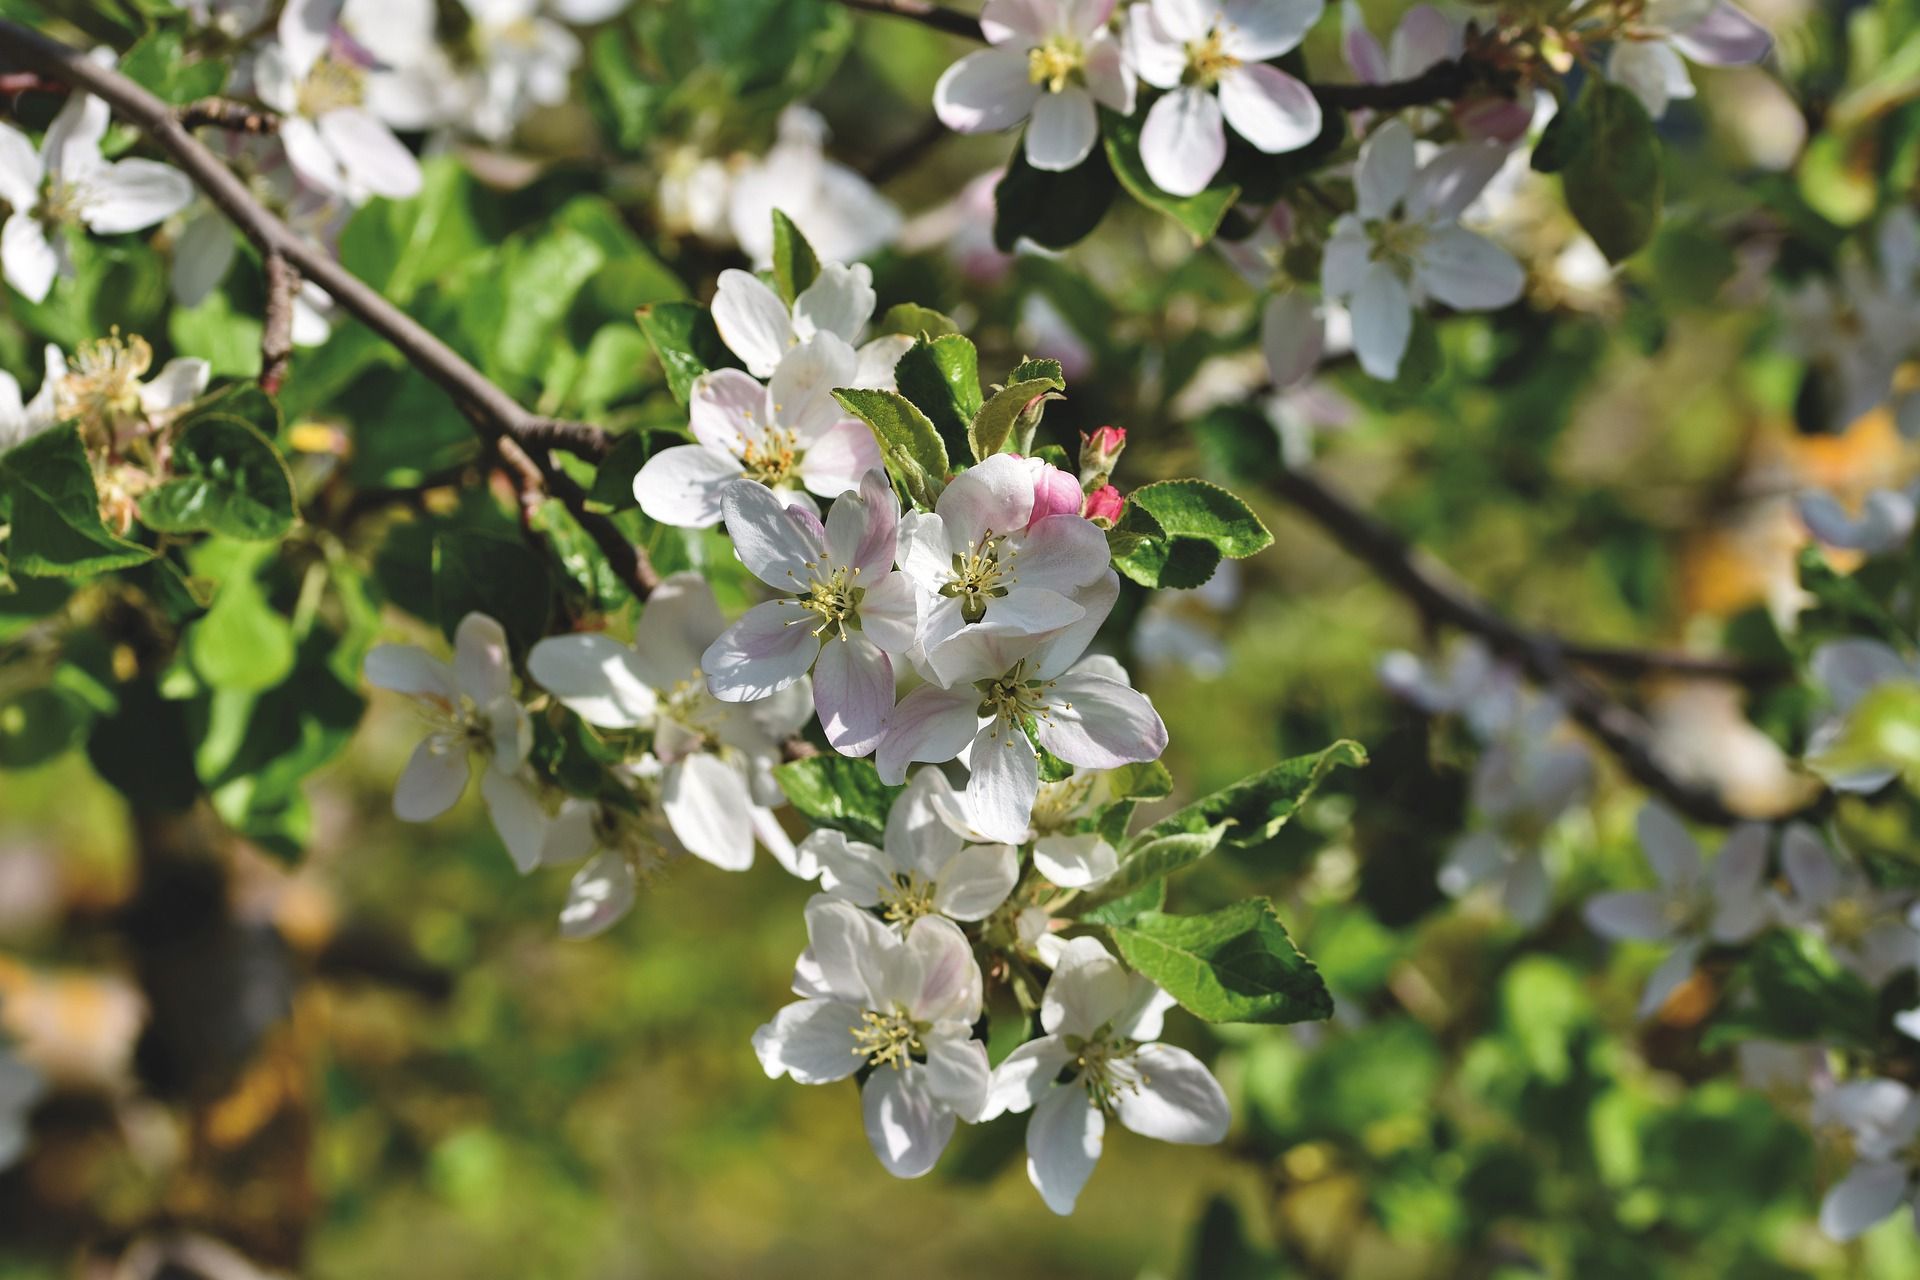 Imagen típica de floración que se da durante de la primavera / Foto: Pixabay